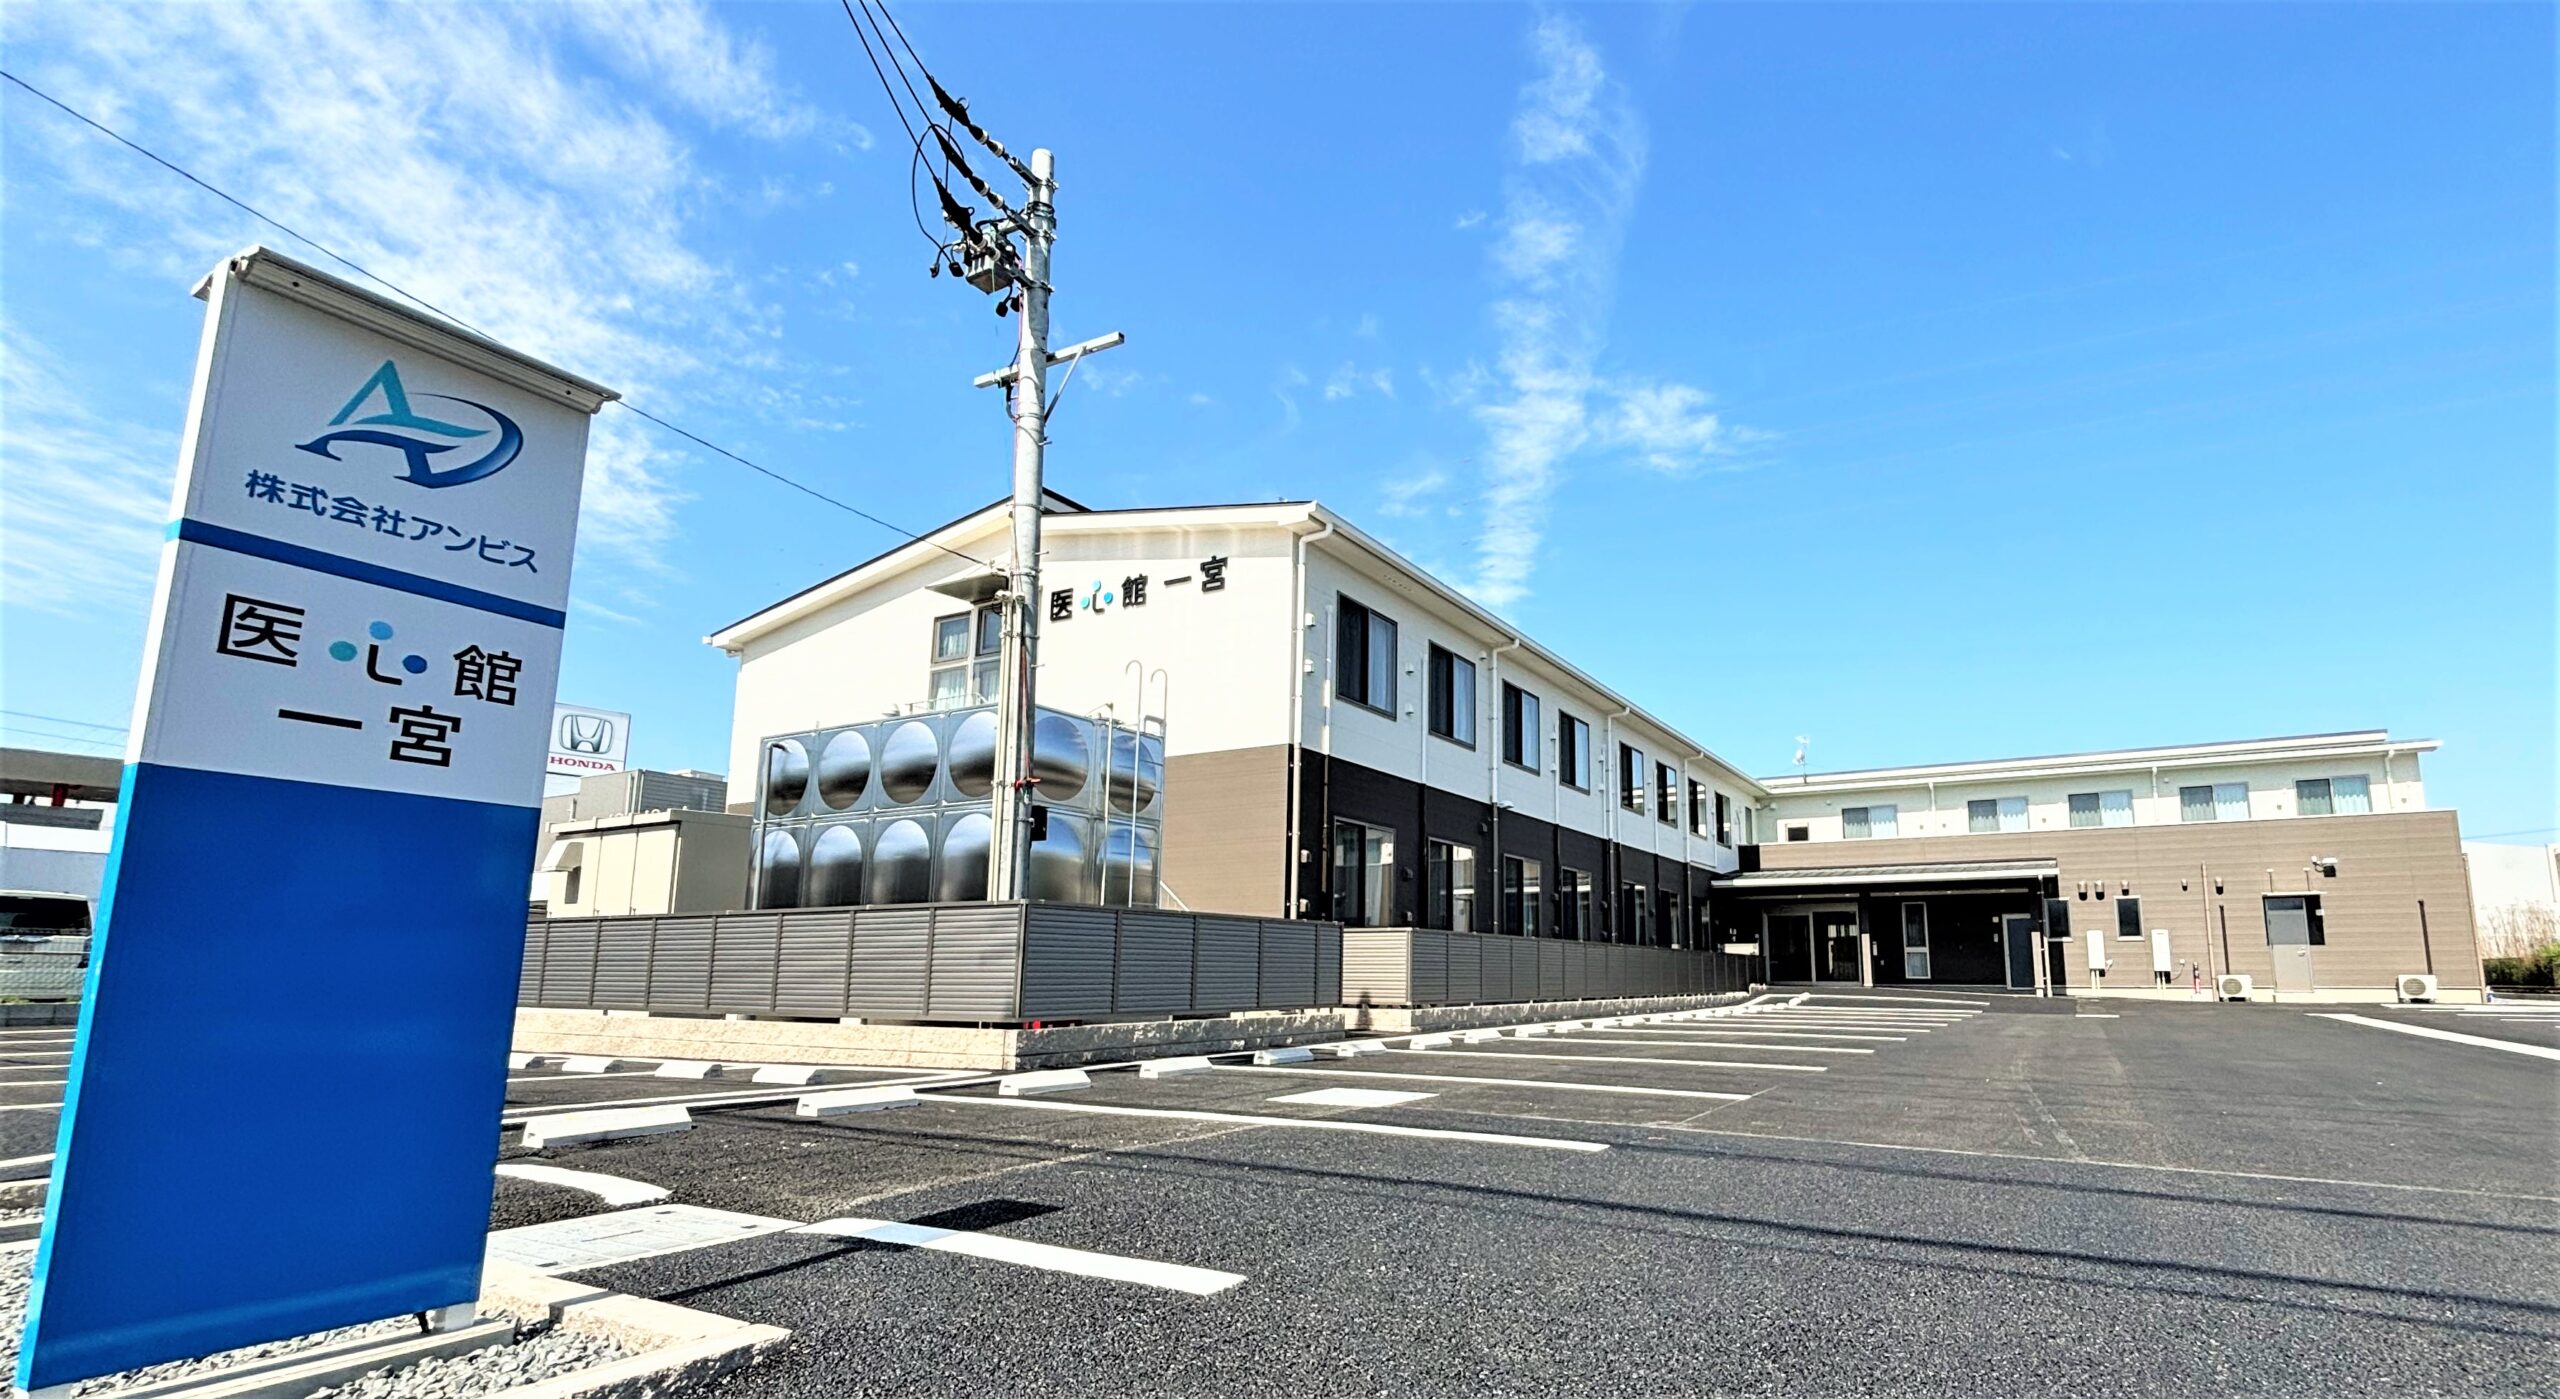 愛知県では７施設目となる 有料老人ホーム「医心館 一宮」をオープンしました